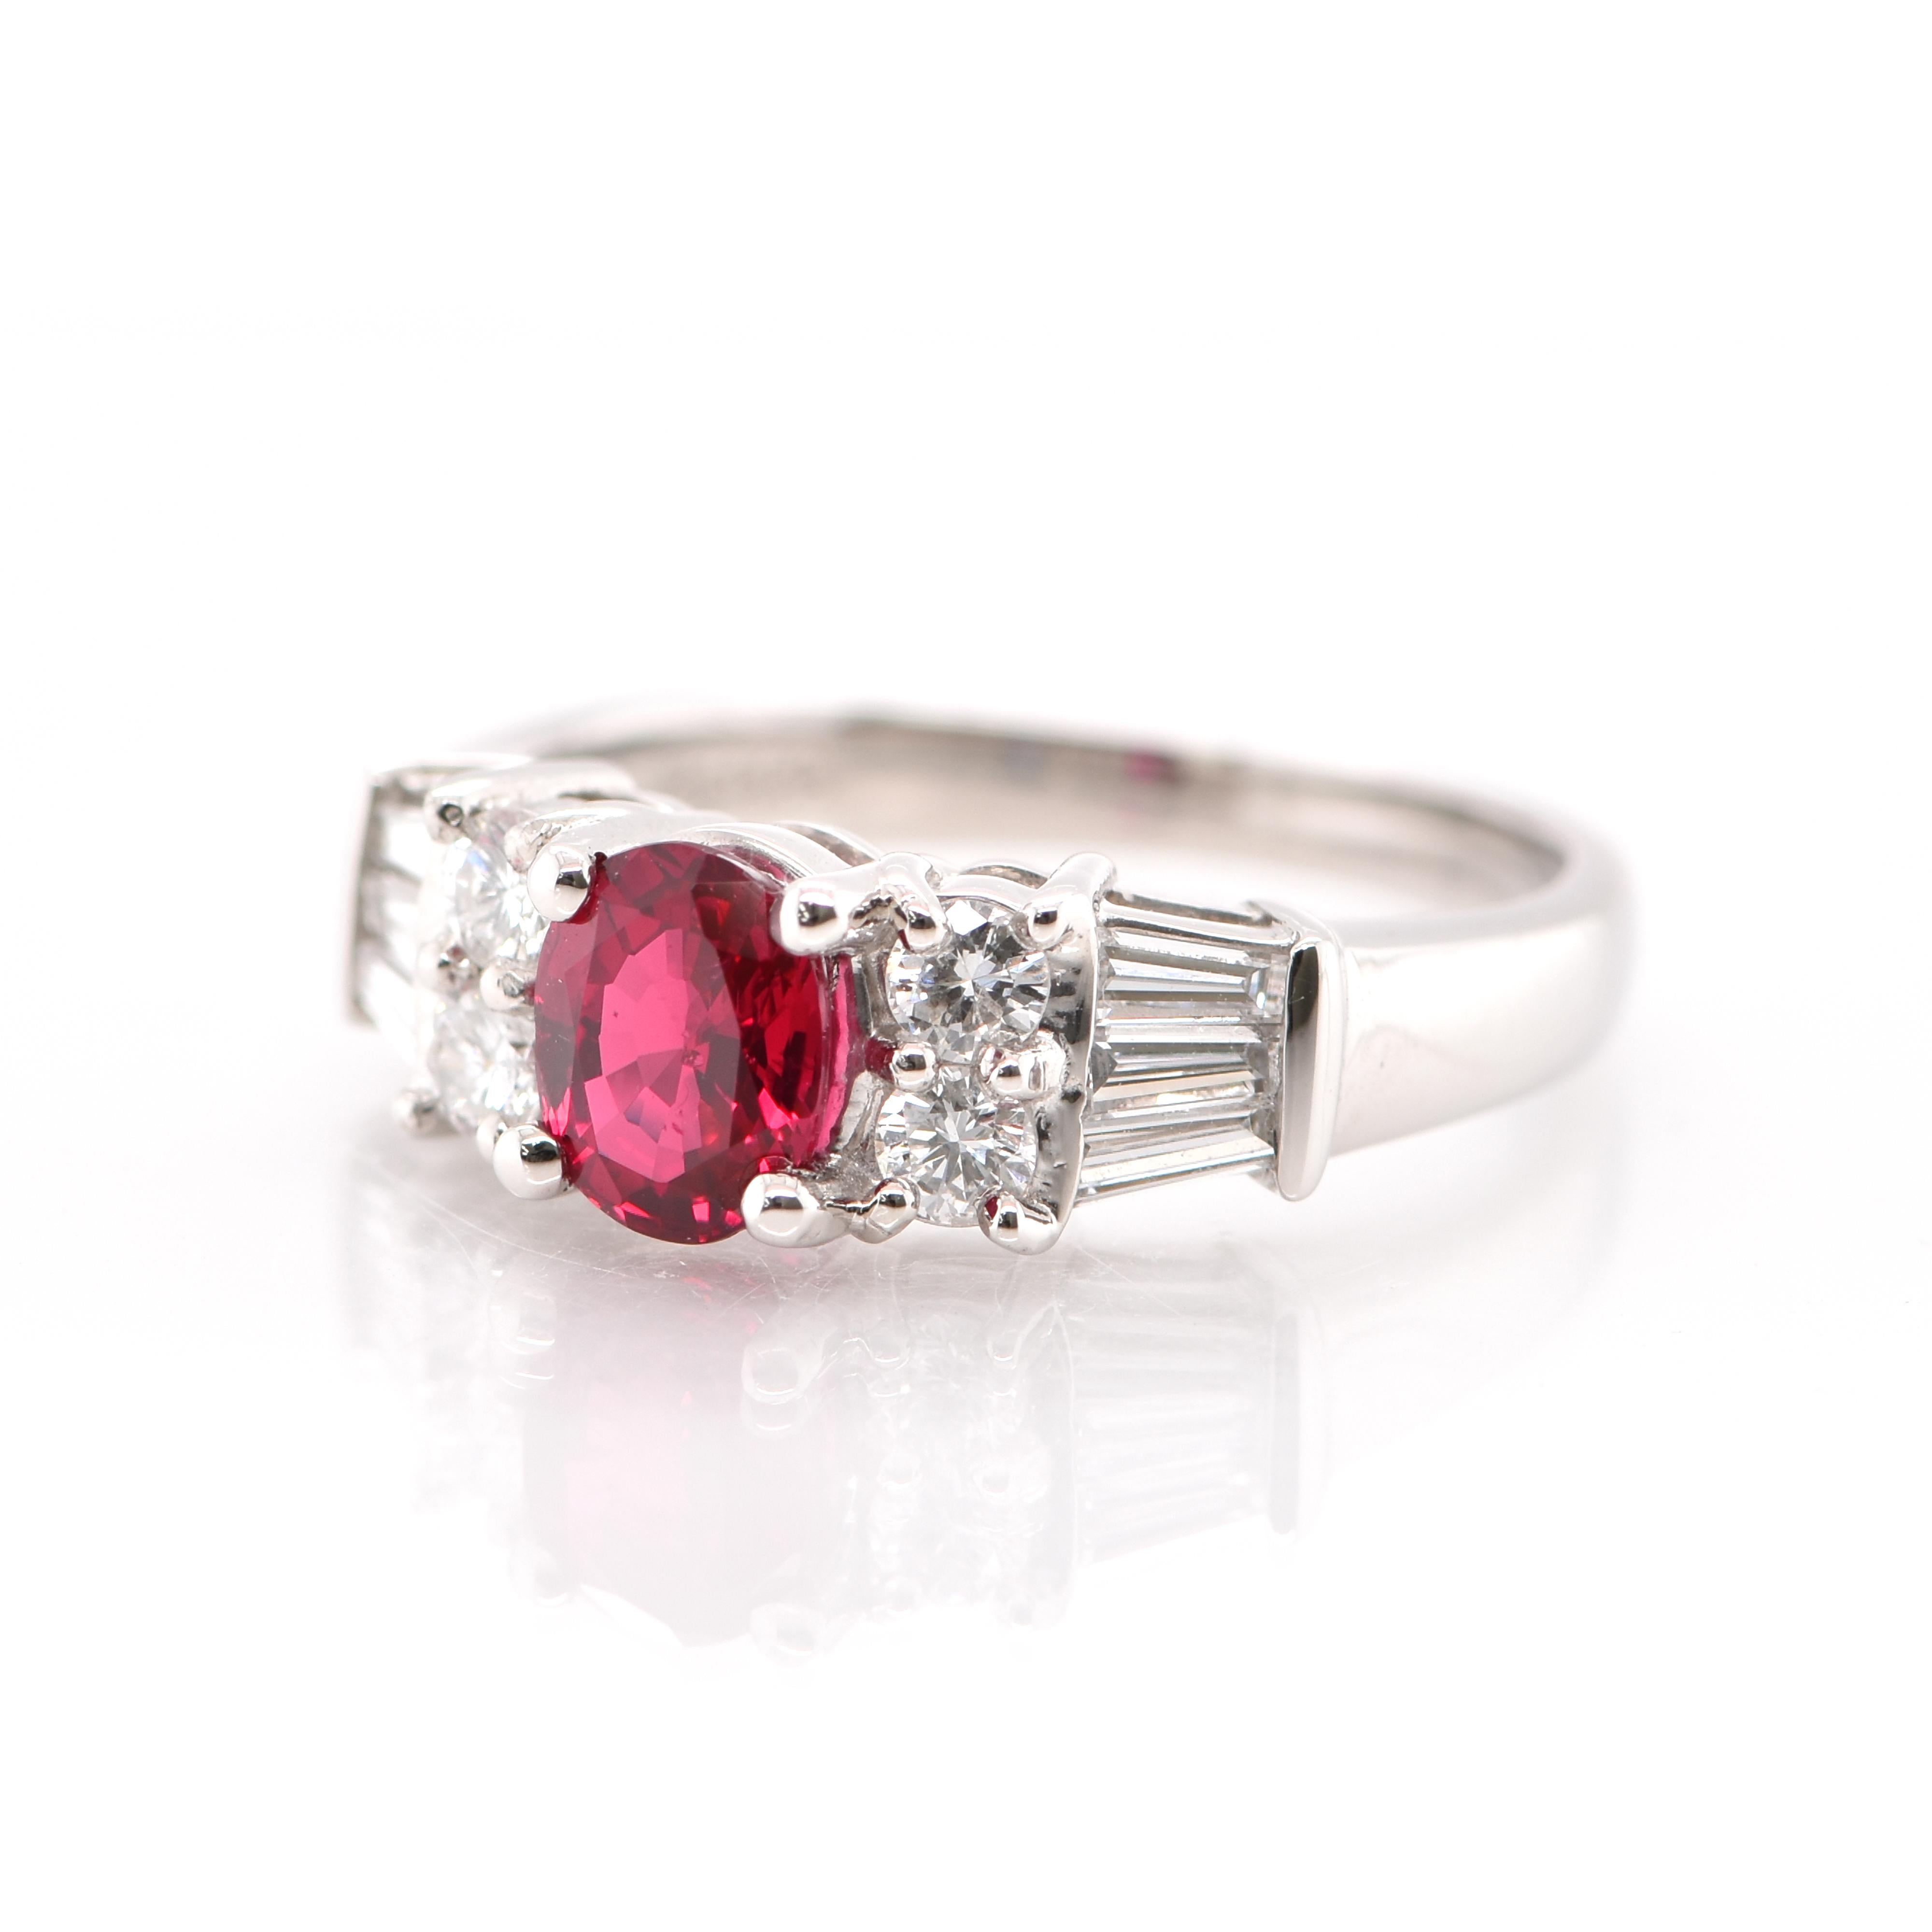 Une magnifique bague de fiançailles ornée d'un rubis naturel de 1,00 carat et de 0,58 carat de diamants sertis dans du platine. Les rubis sont appelés 